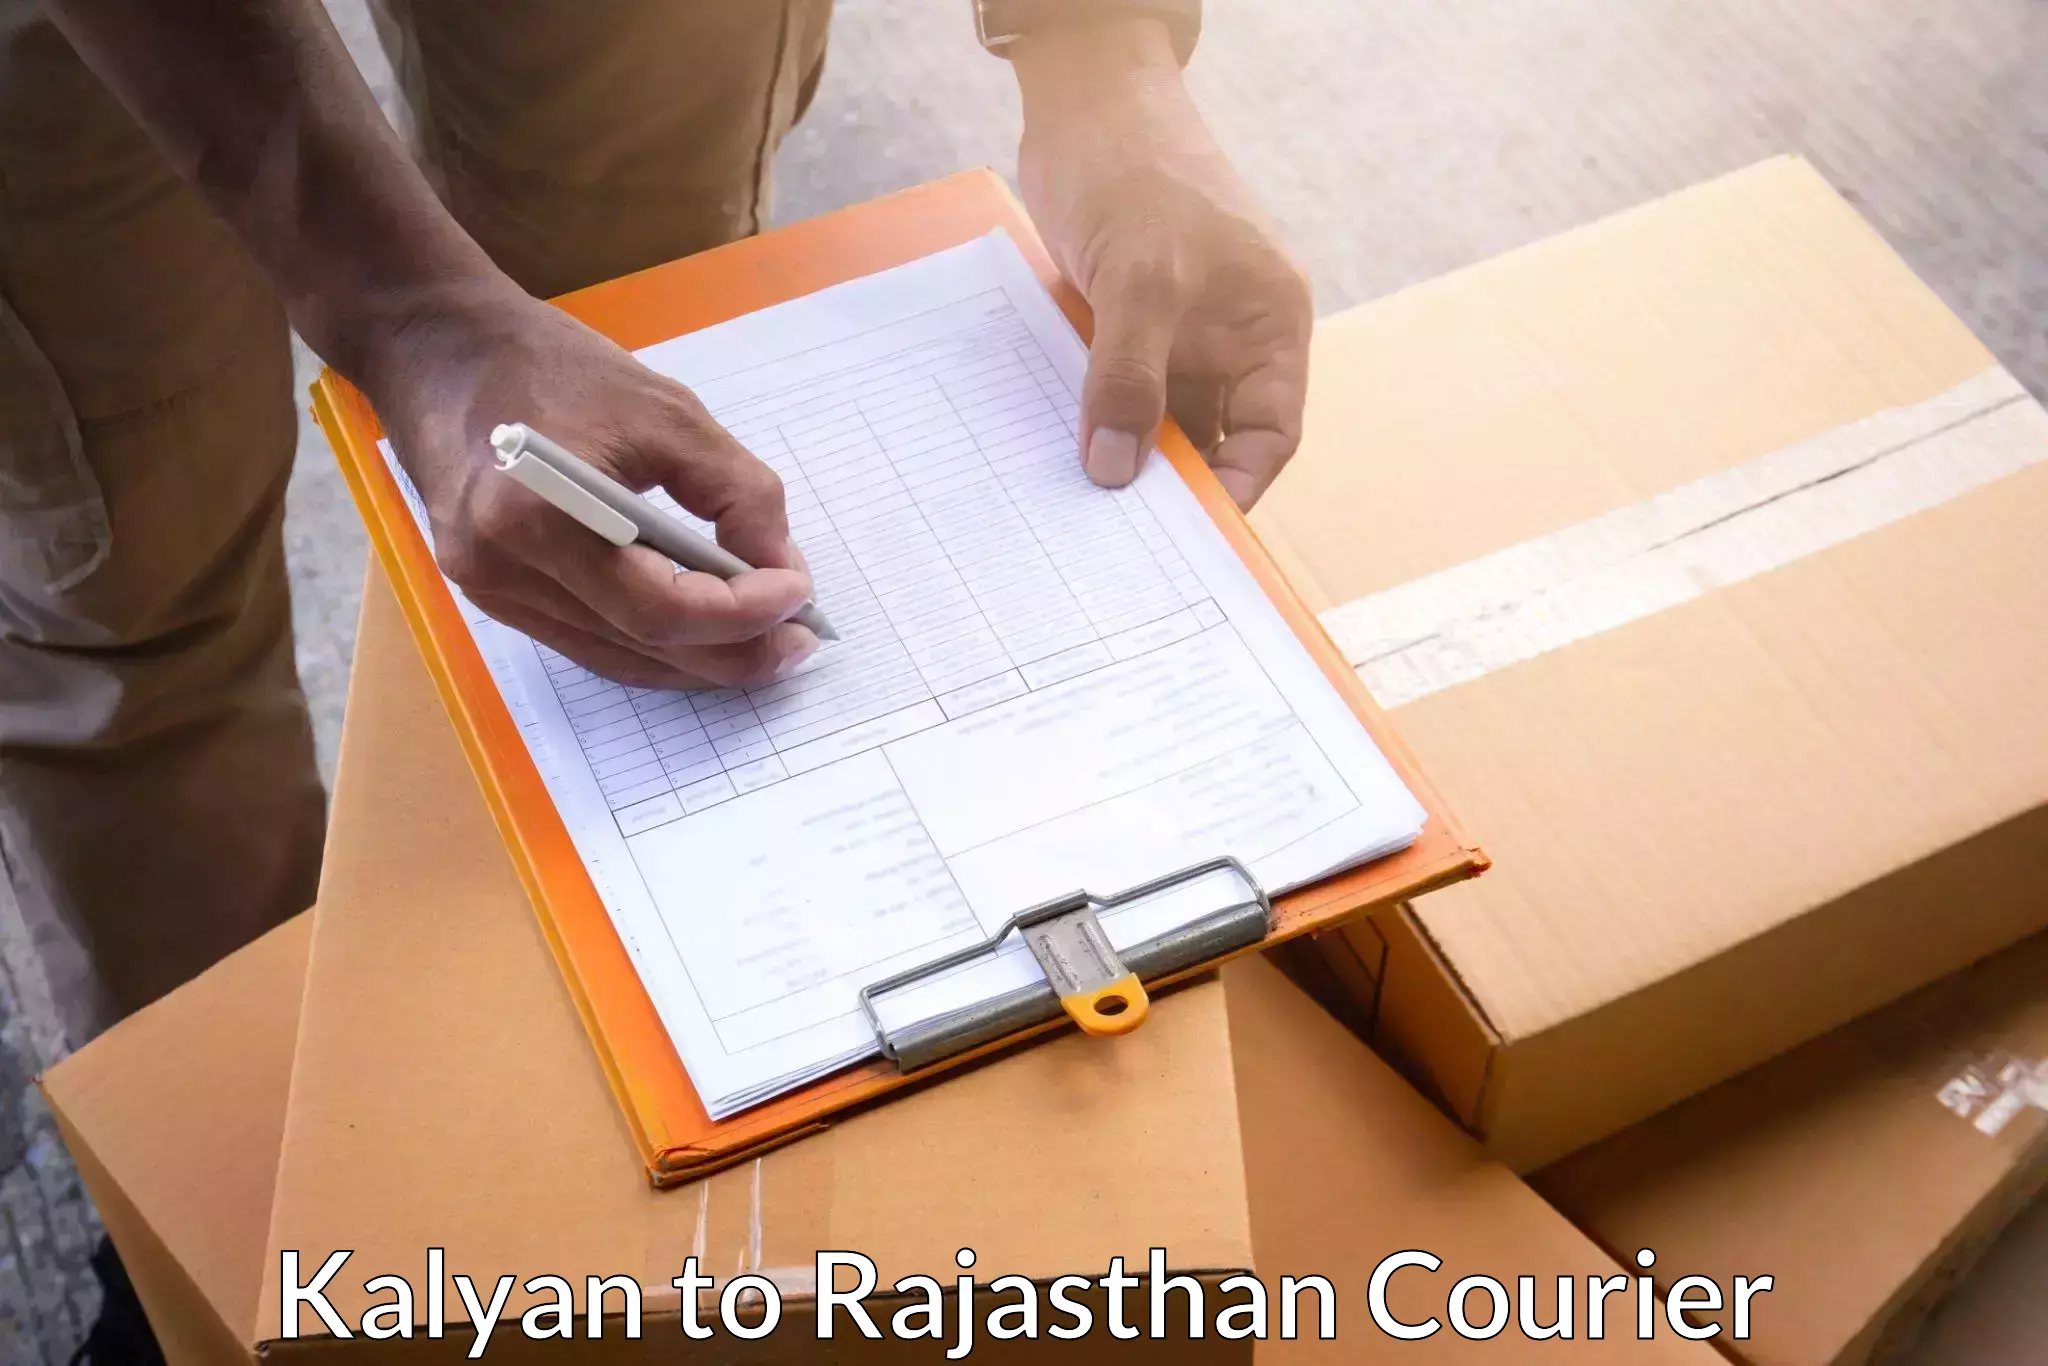 24/7 courier service in Kalyan to Udaipurwati